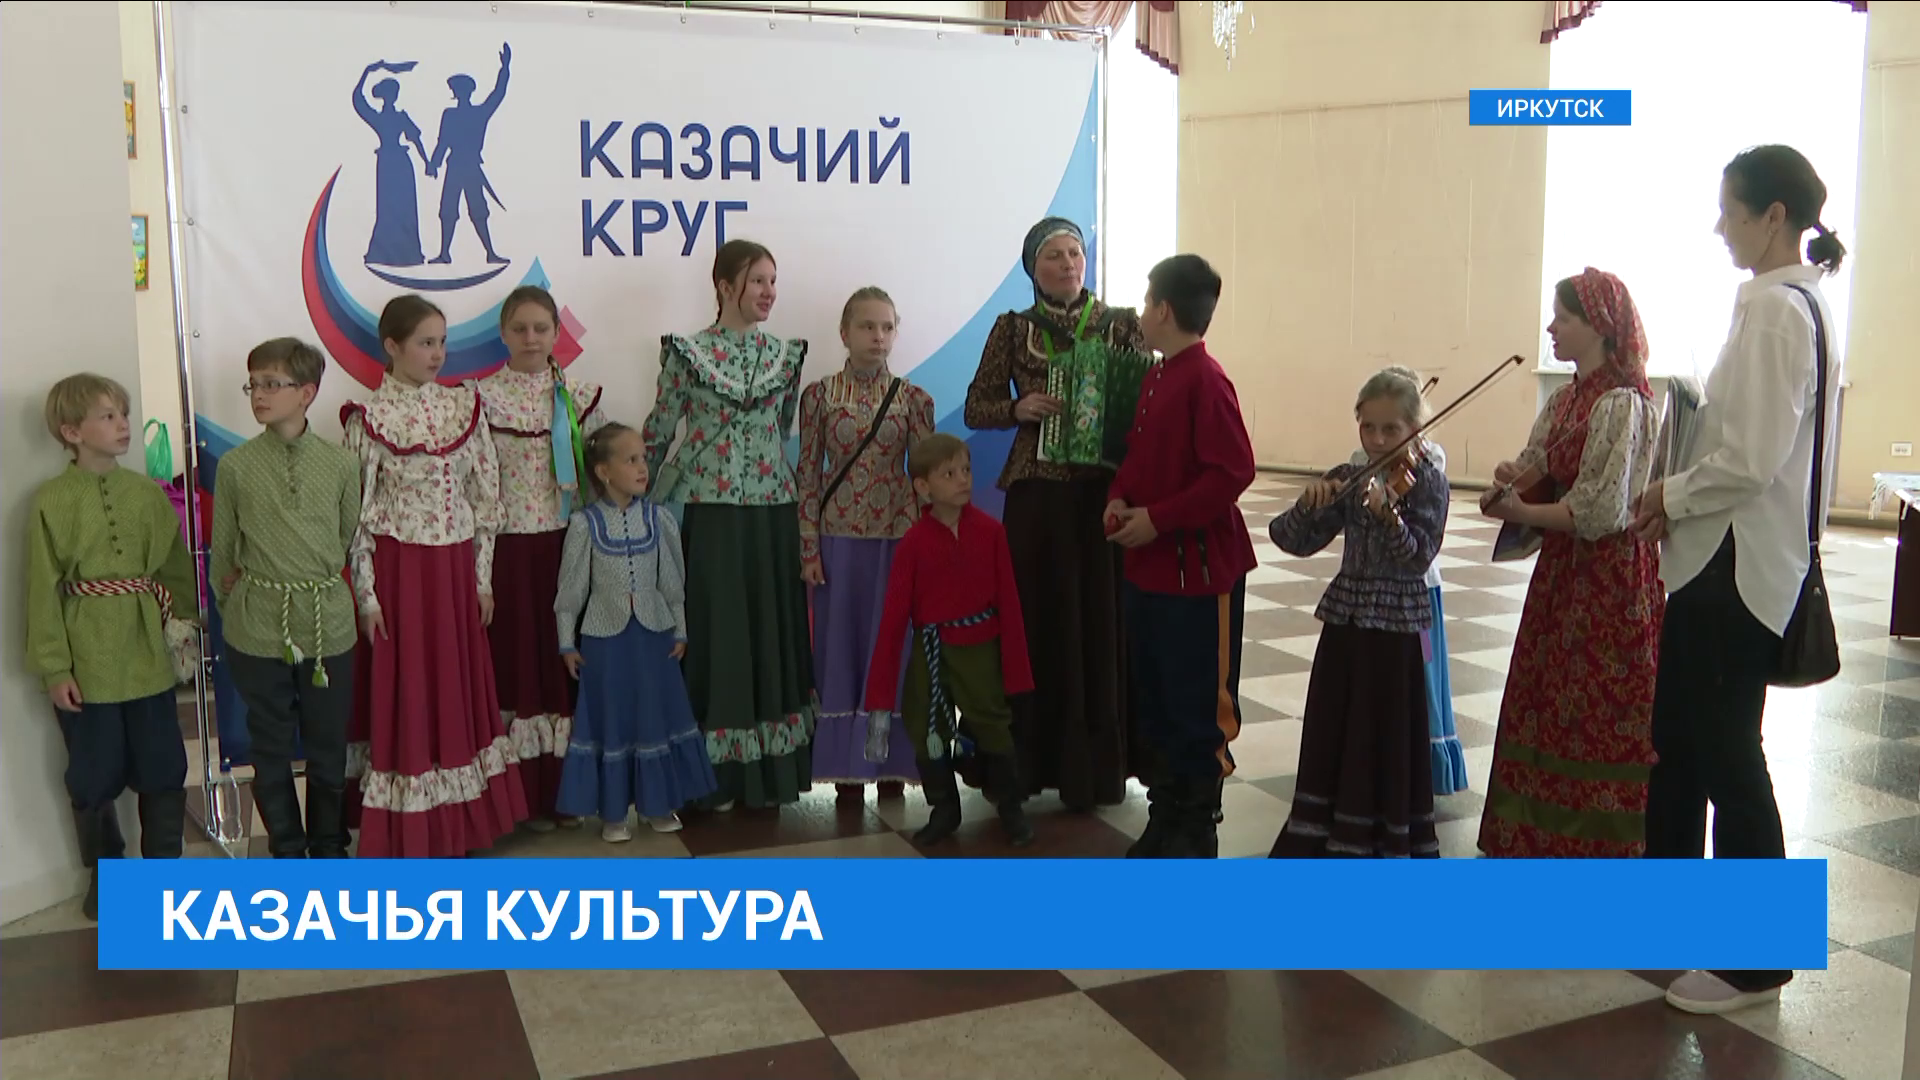 Областной фестиваль традиционной казачьей культуры проходит в Иркутске